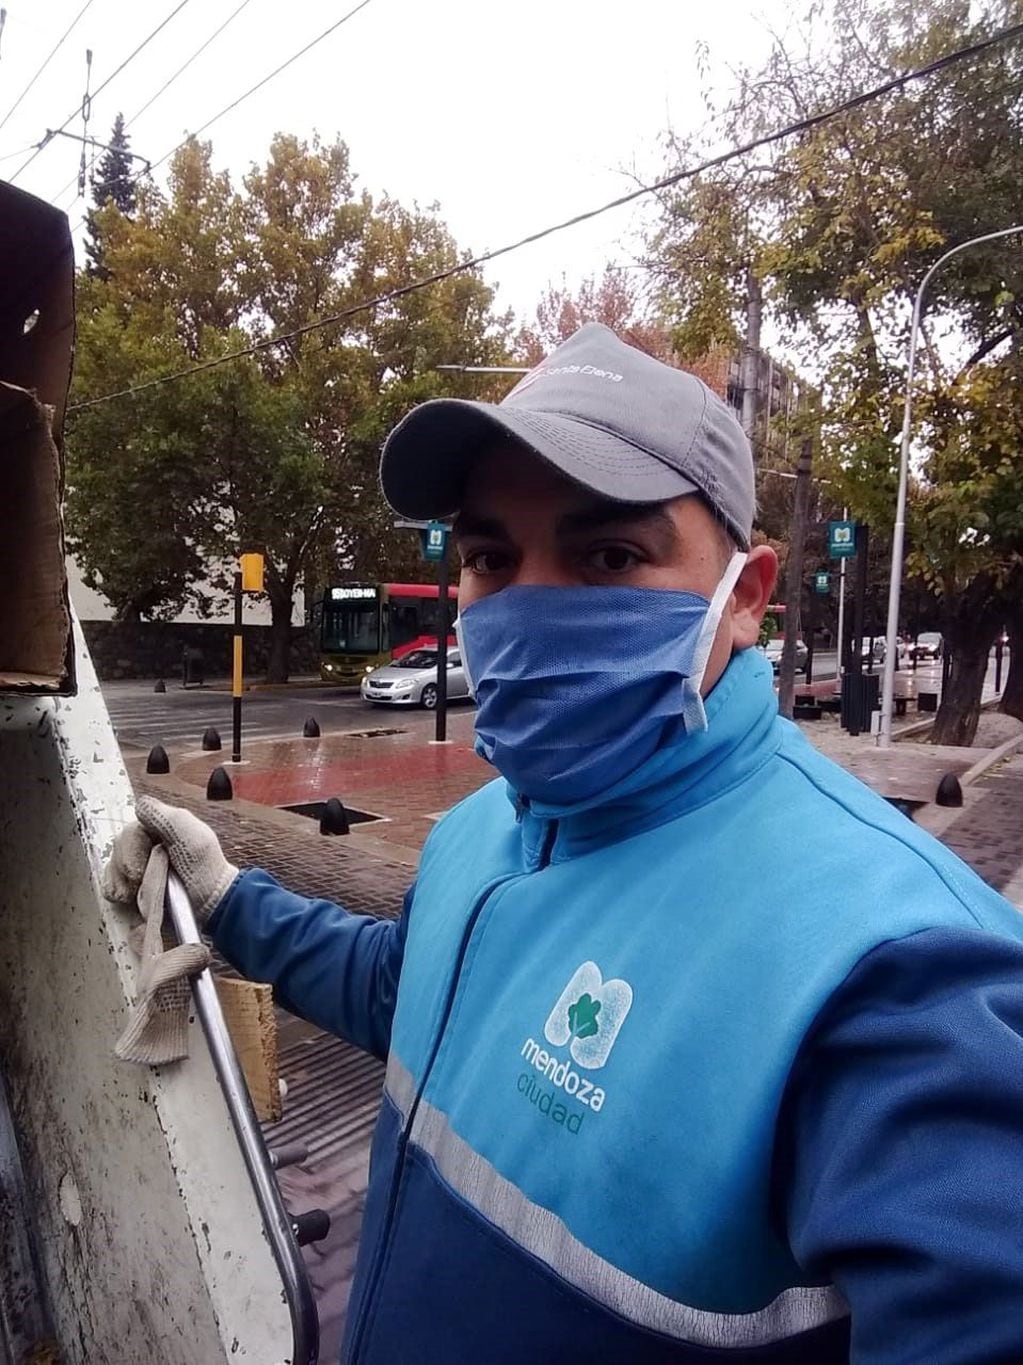 Todos los días, de 6 a 13:30; Diego Medina trabaja en la recolección de residuos en la Ciudad de Mendoza. Por la tarde, de lunes a jueves, entrena a más de 70 chicos en su escuelita de fútbol.